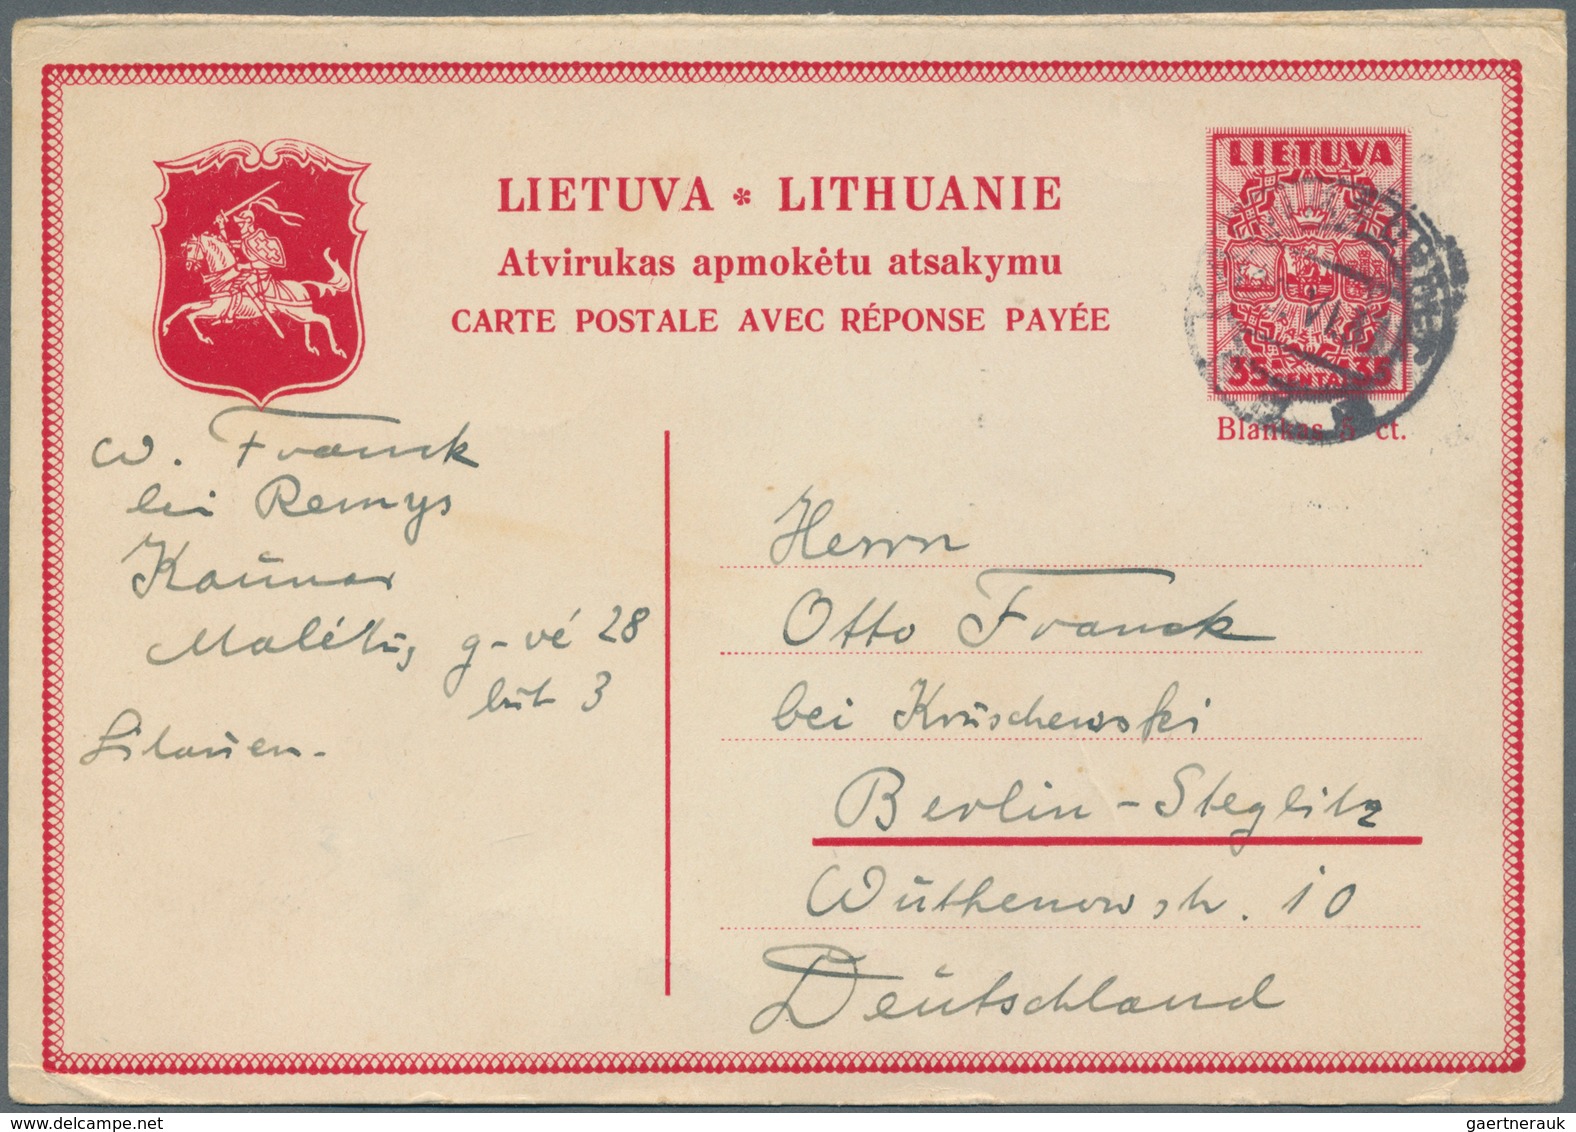 Litauen - Ganzsachen: 1937 Postal Stationery Card 35 Centai Red Commercially Used From Kaunas To Ber - Litauen